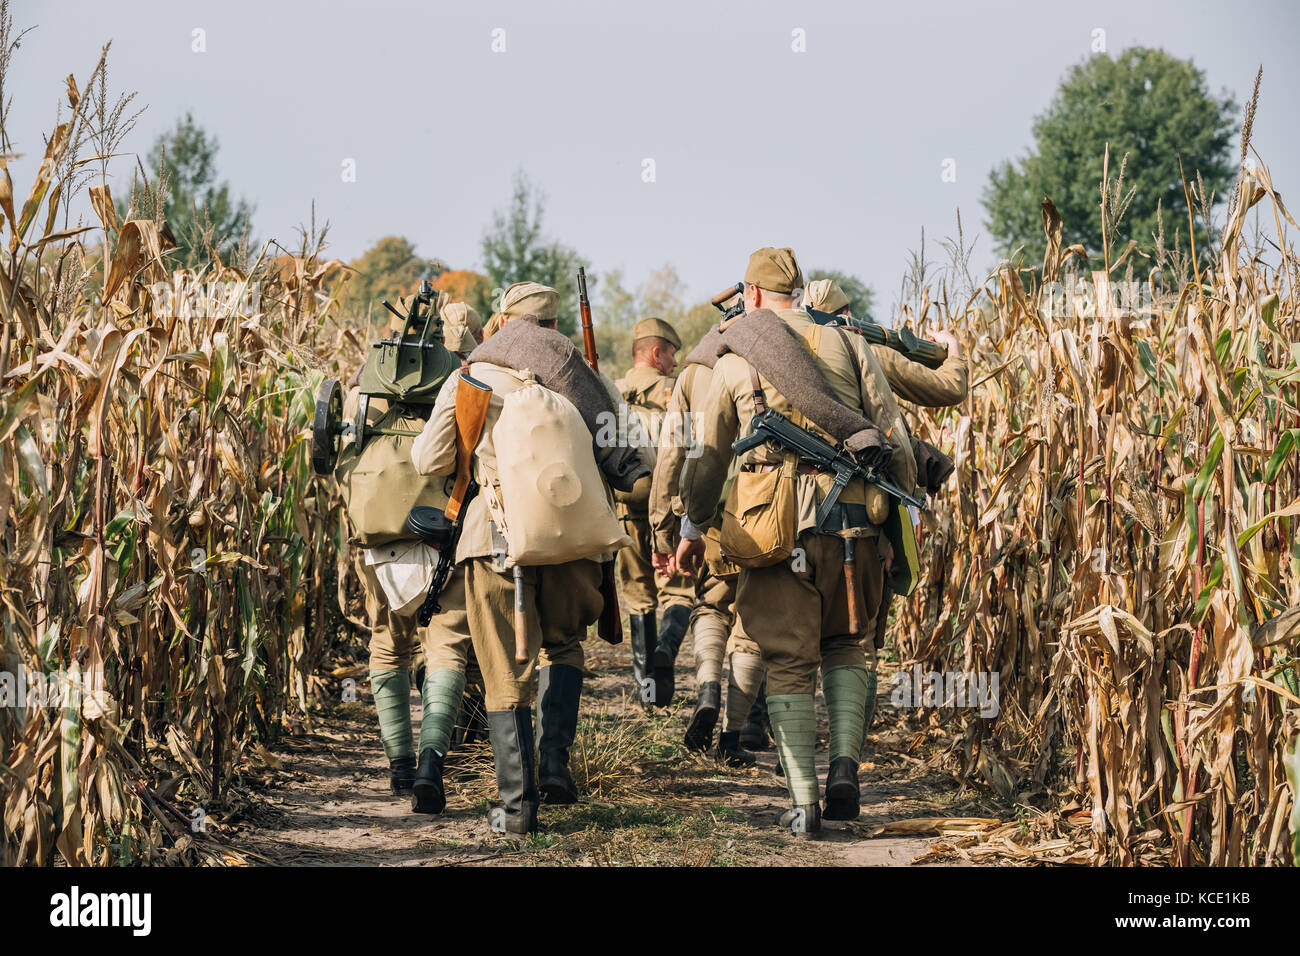 Recreacions ruso hombres vestidos como soldados de infantería del Ejército Rojo soviético de la II Guerra Mundial marchando en campo con arma ametralladora en reenactmen histórico Foto de stock